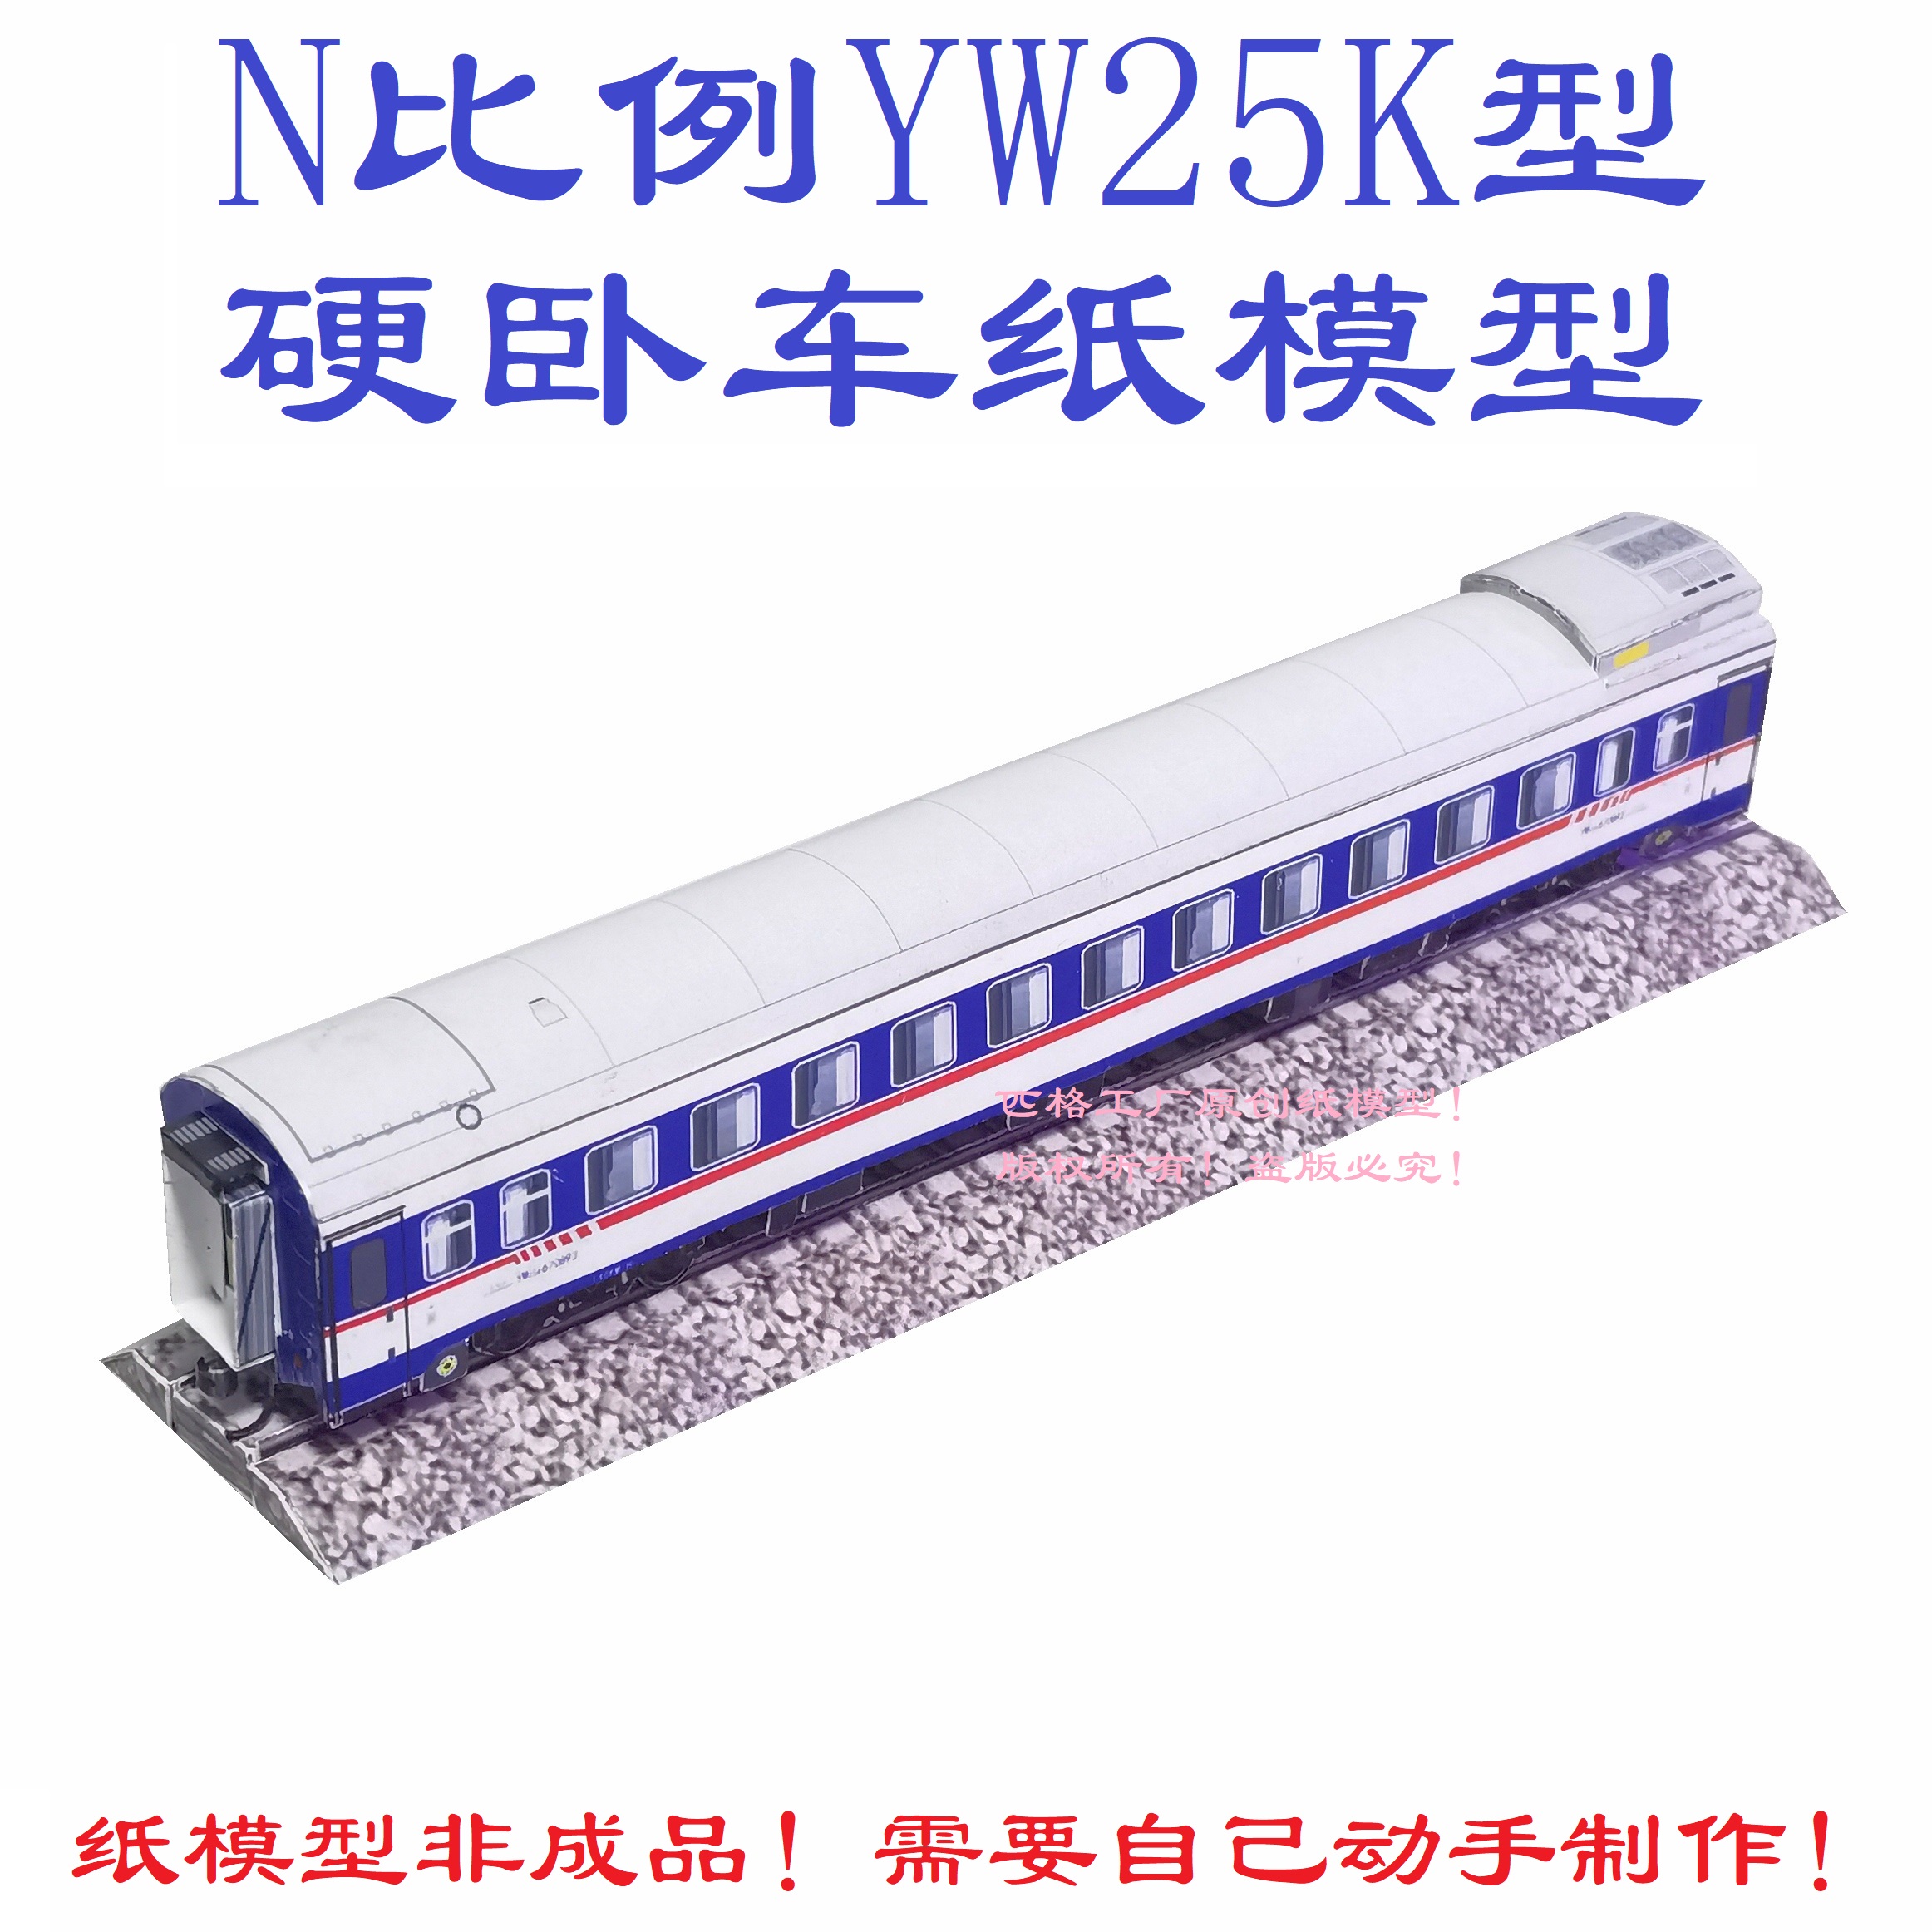 匹格工厂N比例YW25K硬卧车模型3D纸模型DIY手工铁路高铁火车模型-封面